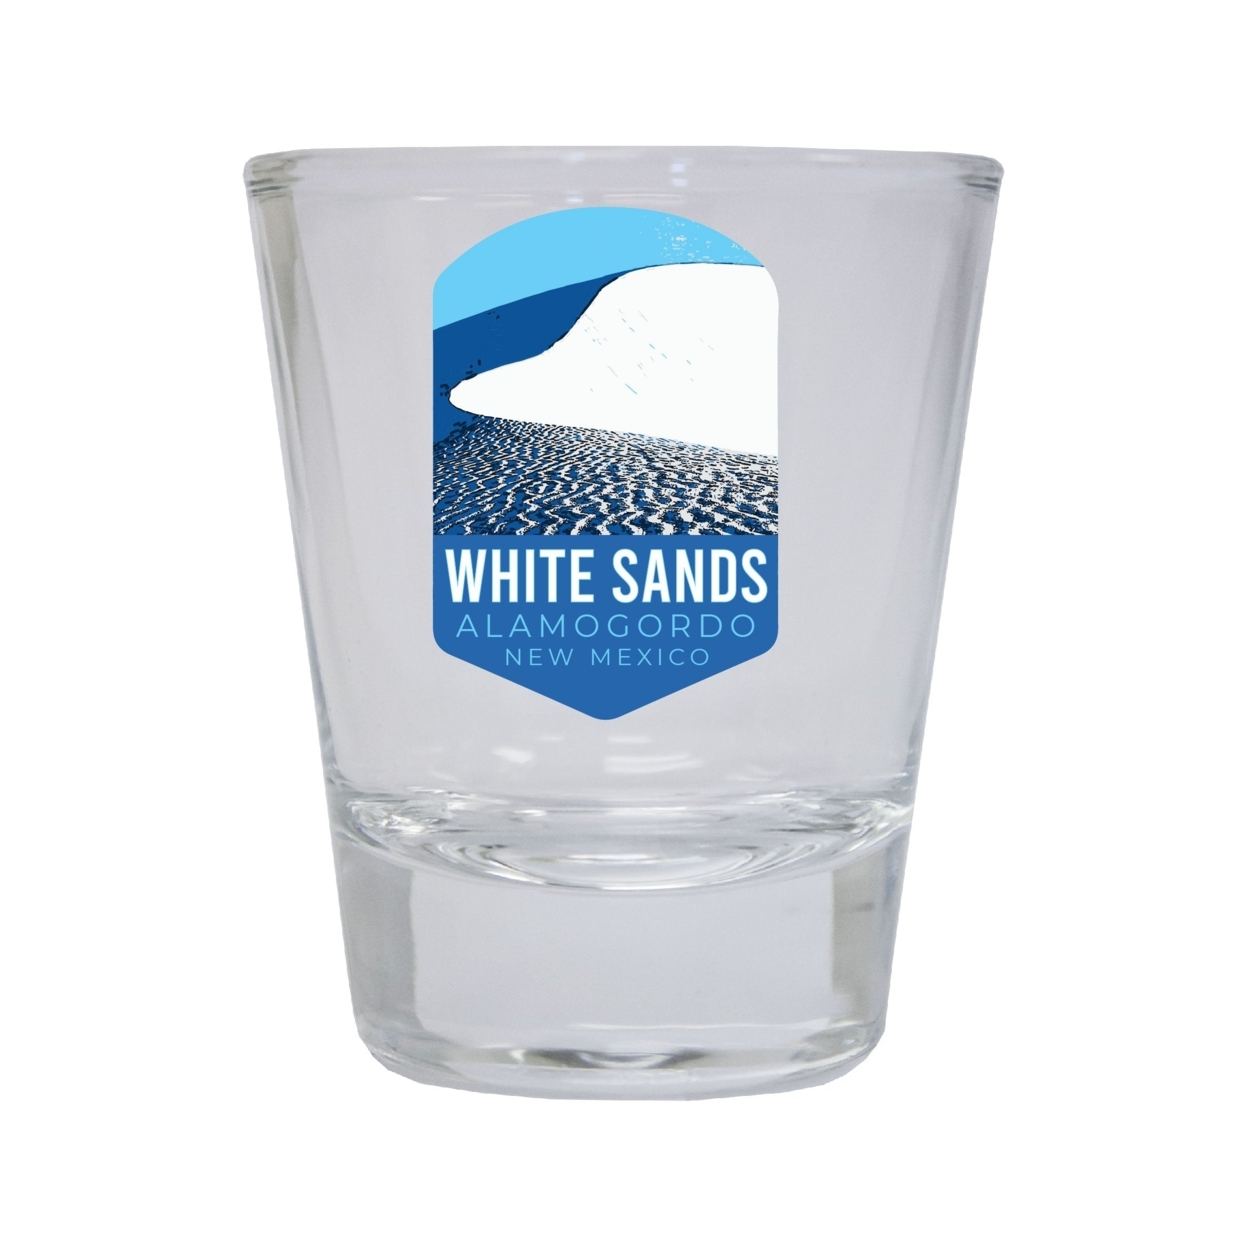 White Sands Alamogordo New Mexico Souvenir Round Shot Glass Choice Of Design - Design 1